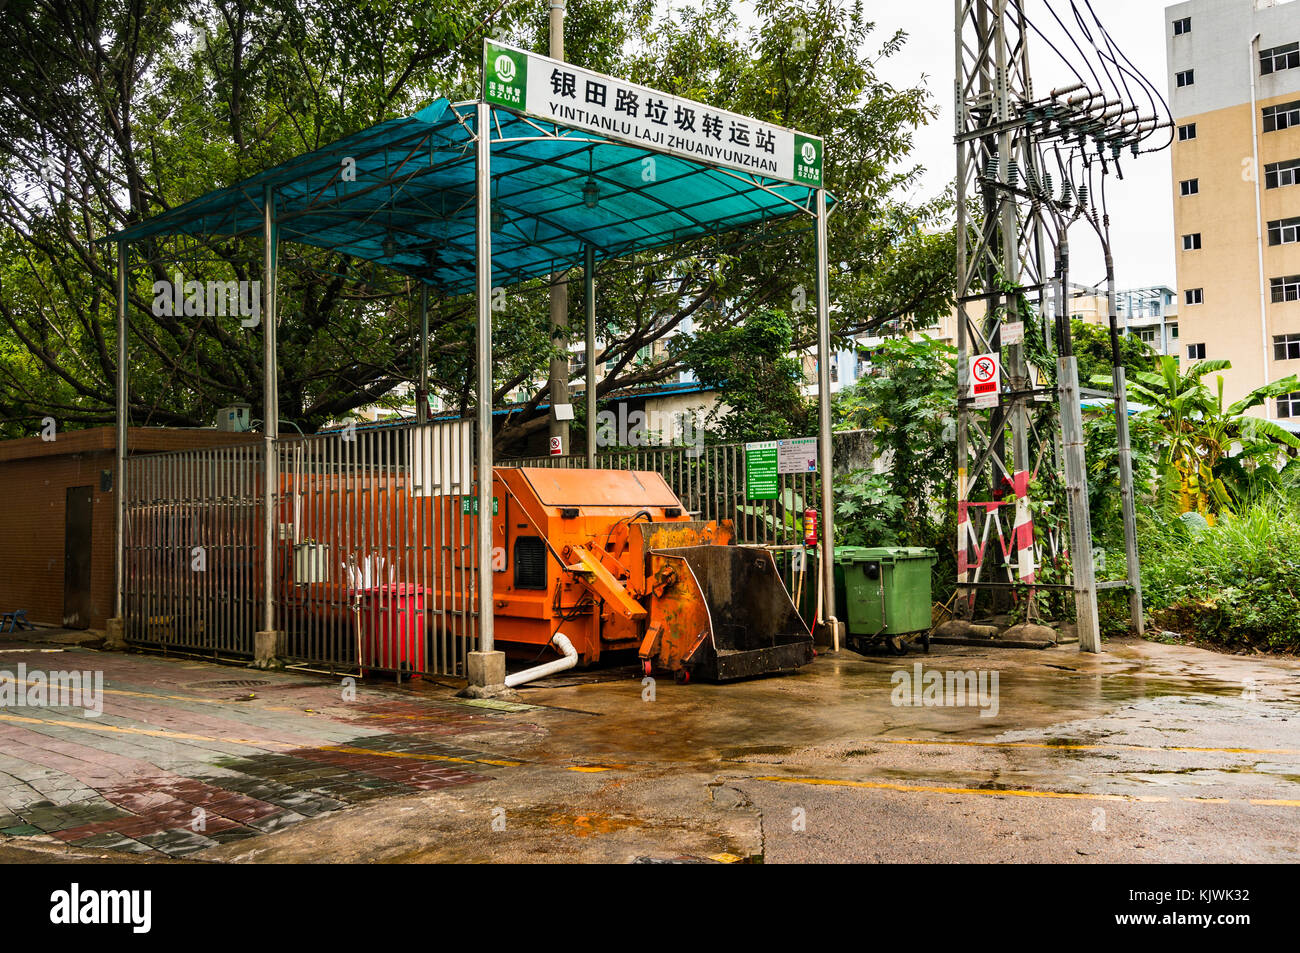 Compacteur de gare à Shenzhen, province de Guangdong, Chine Banque D'Images